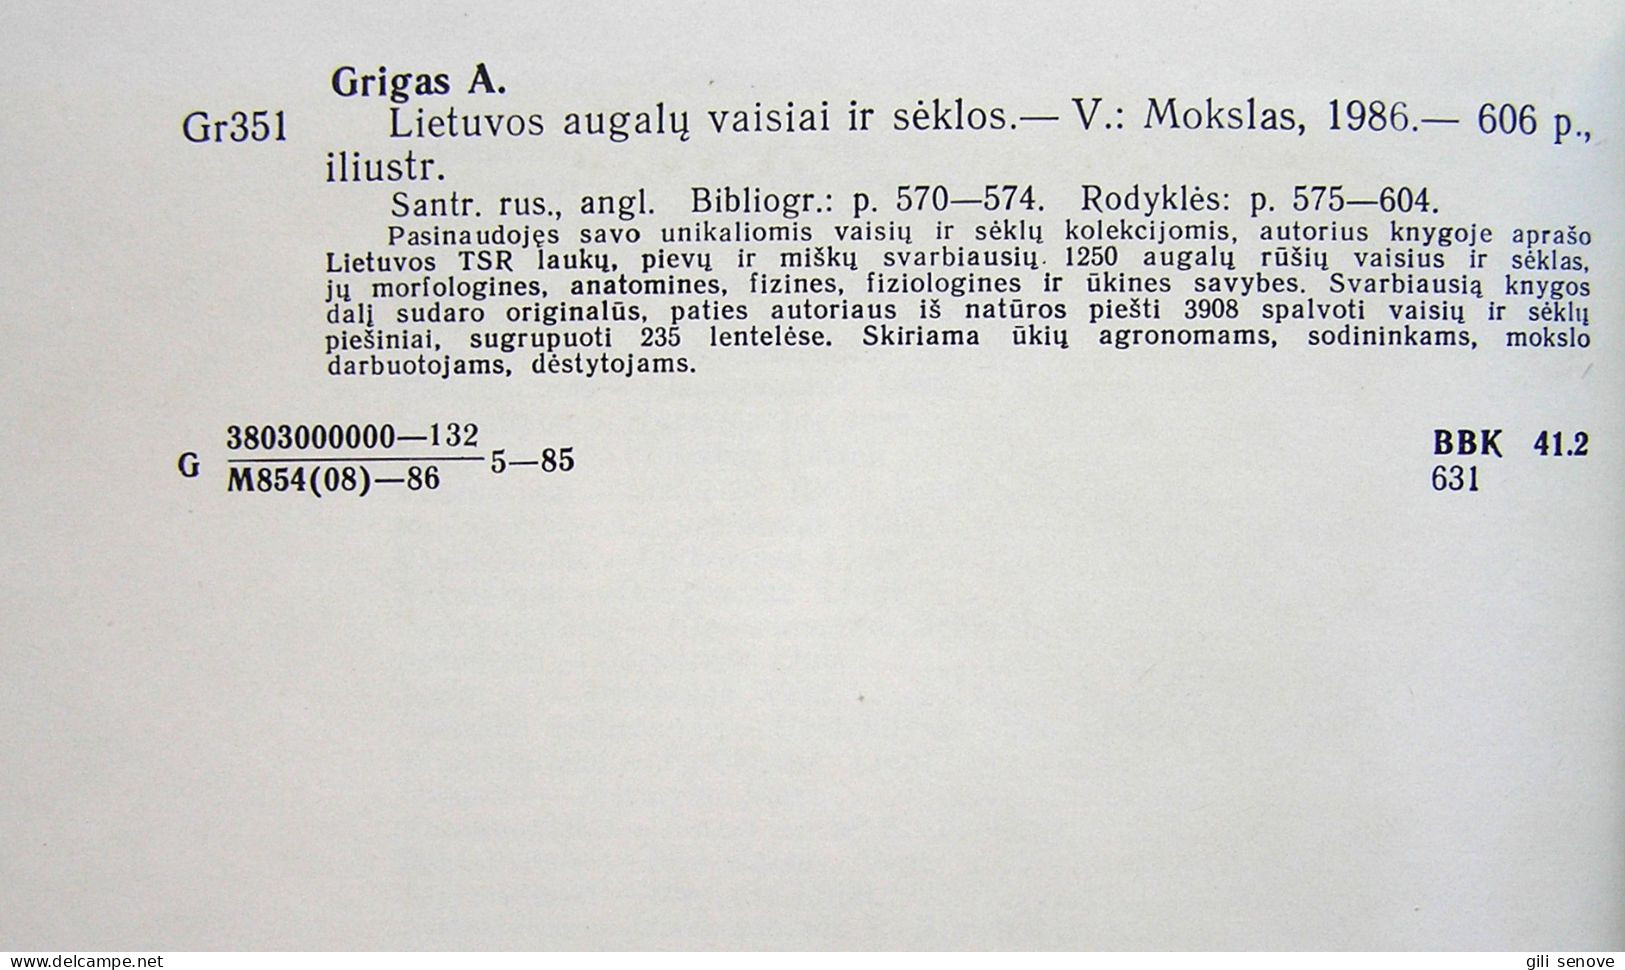 Lithuanian book / Lietuvos augalų vaisiai ir sėklos by Grigas 1986